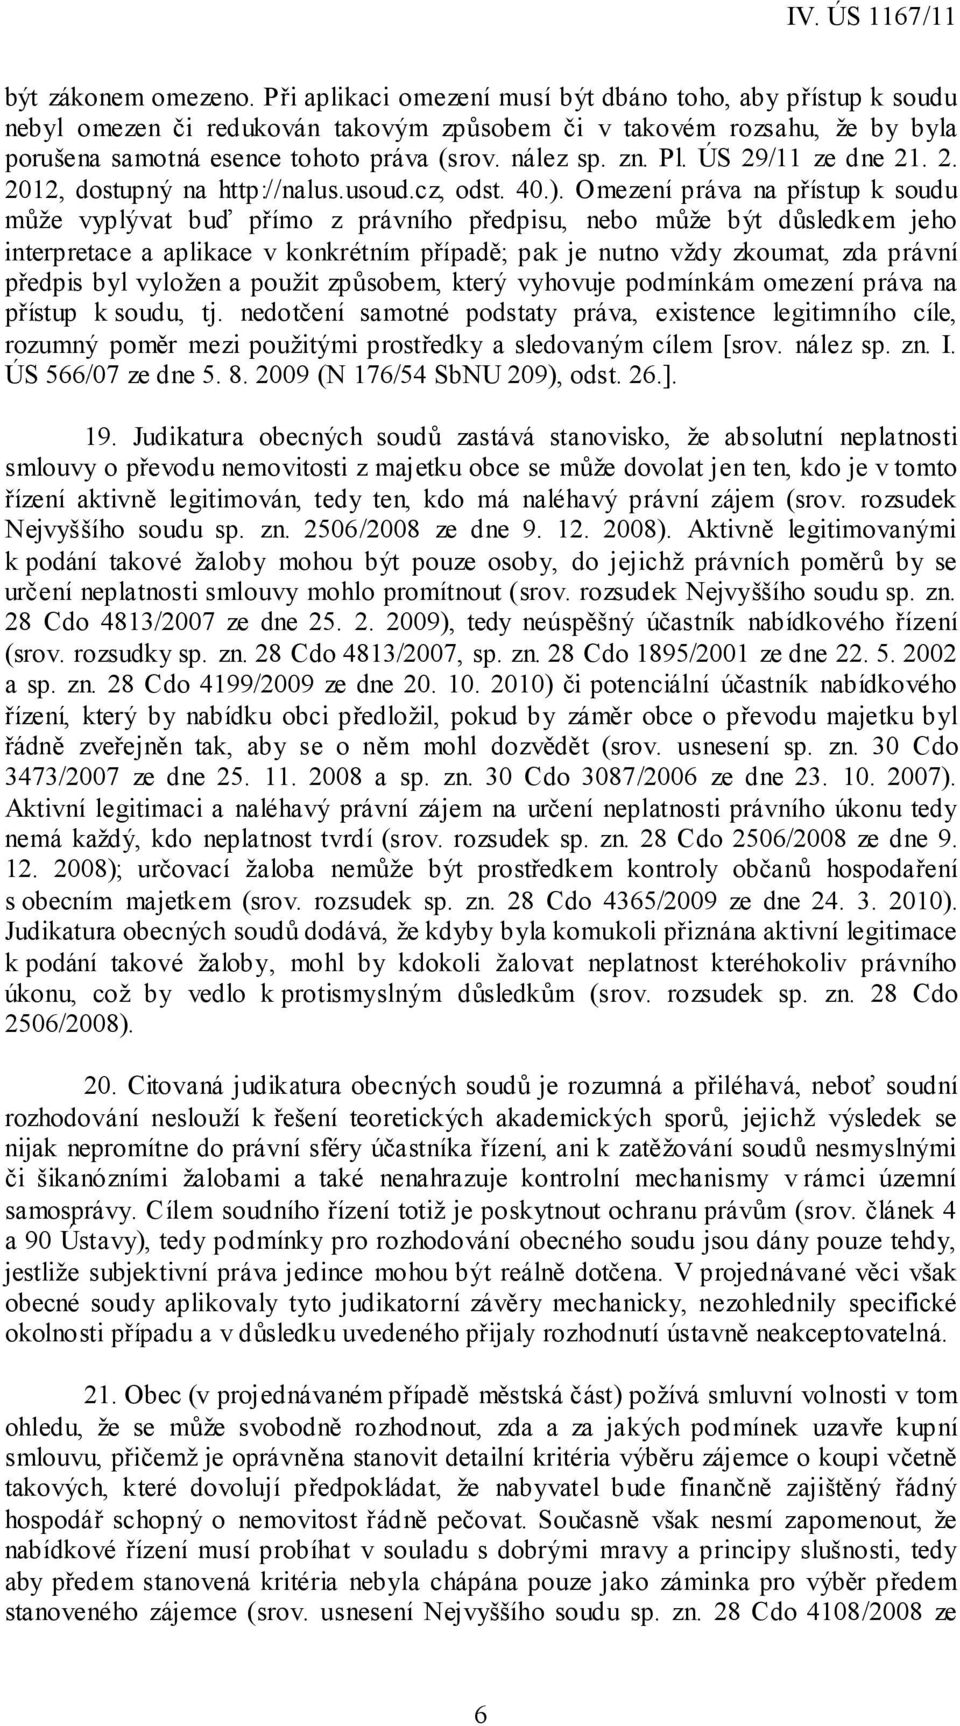 ÚS 29/11 ze dne 21. 2. 2012, dostupný na http://nalus.usoud.cz, odst. 40.).